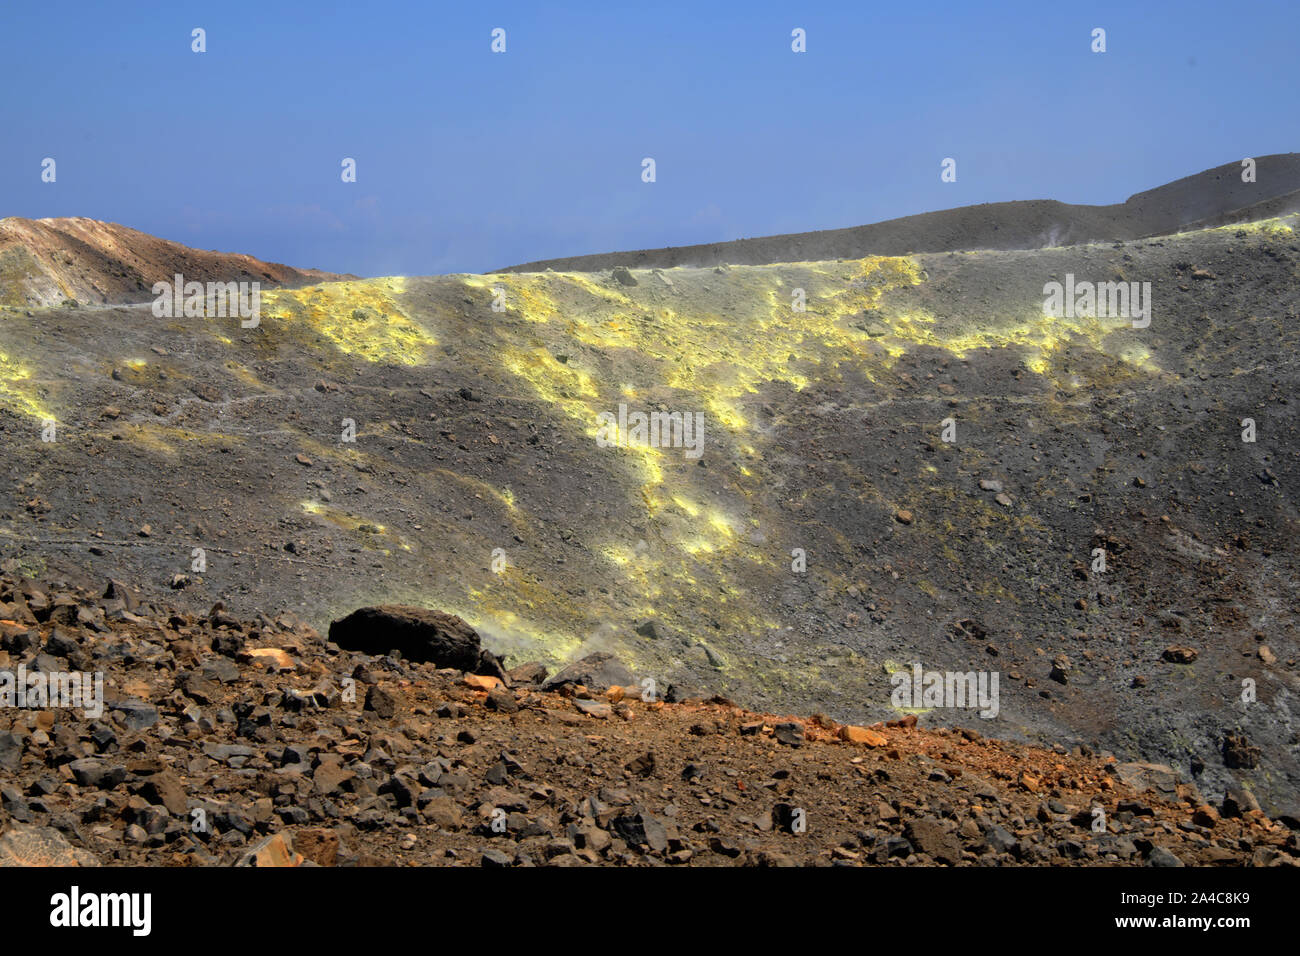 Les fumerolles de soufre et de chlore croûtes sur le bord du cratère de Gran Cratere sur l'île de Vulcano, Iles Eoliennes, Sicile, Italie. Banque D'Images